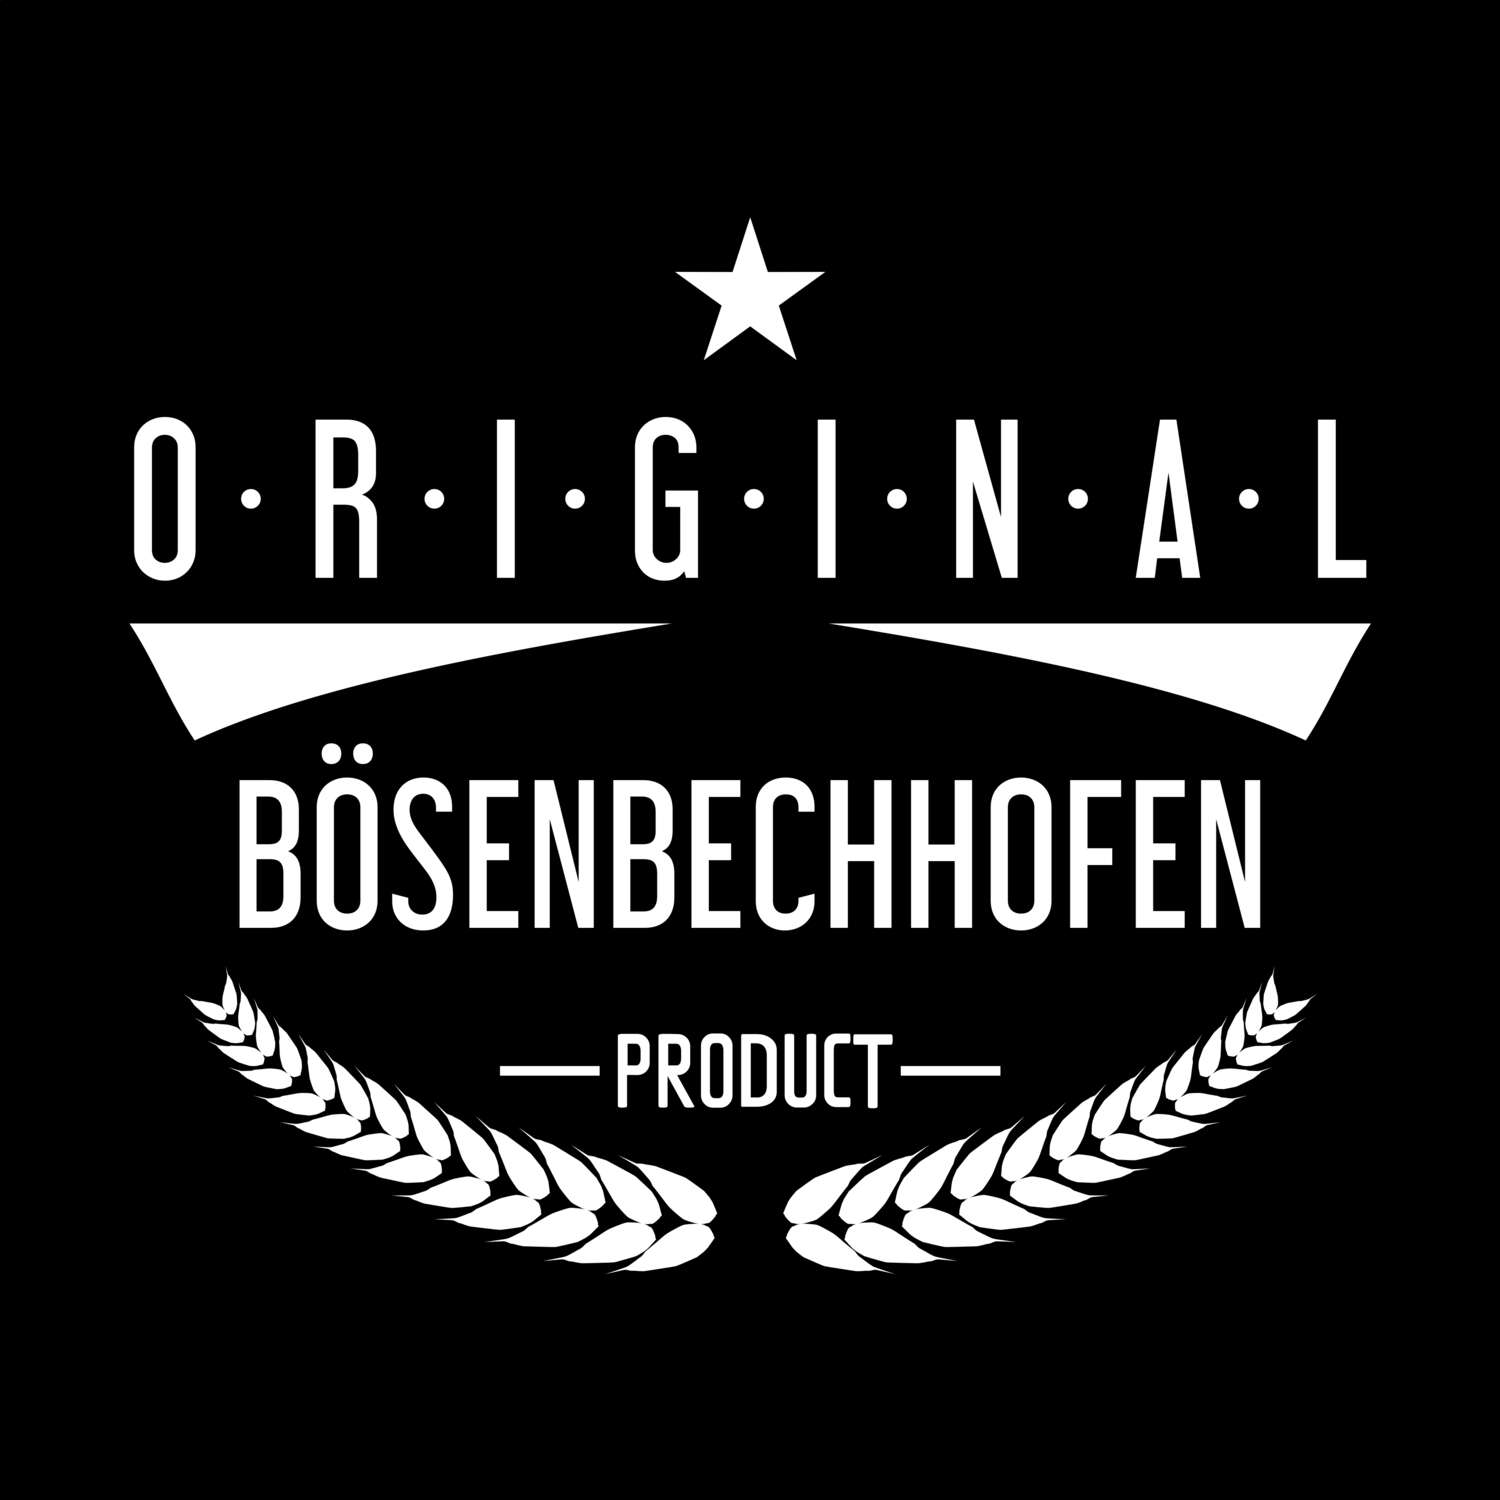 Bösenbechhofen T-Shirt »Original Product«